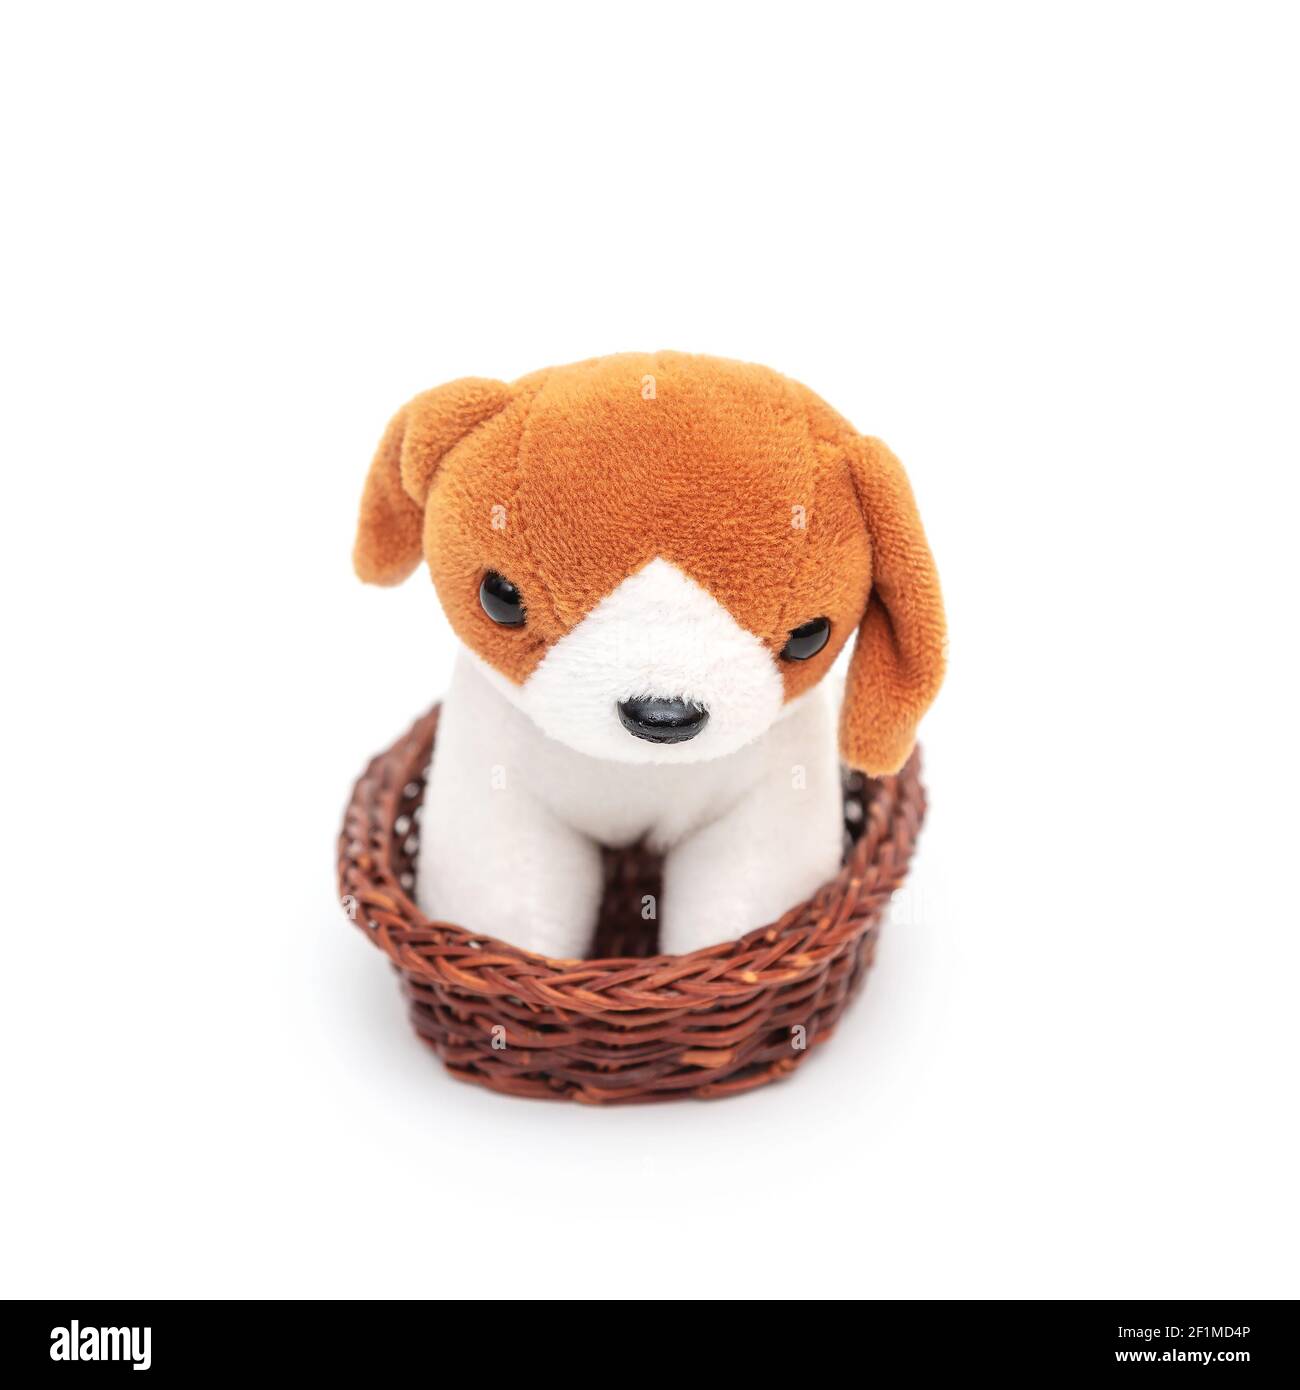 Schöne Stofftier Hund mit roten Ohren sitzt in einem Korb auf weißem  Hintergrund close-up. Welpen Haustier, kleine Plüsch Spielzeug für Kind  Stockfotografie - Alamy